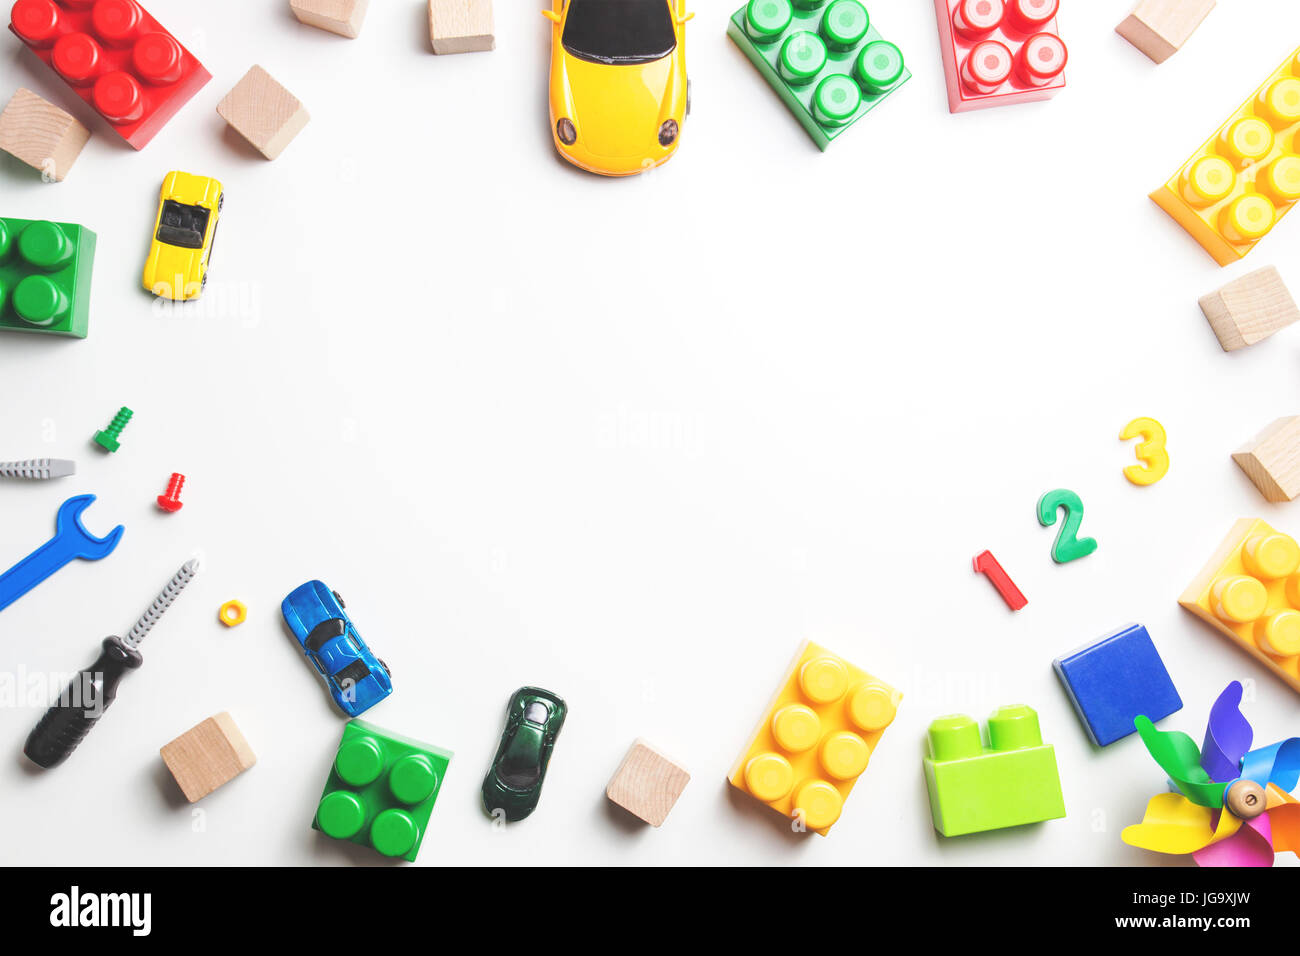 Kinder Spielzeug Rahmen mit Bau Blöcke, Würfel, Spielzeug Werkzeuge und  Autos auf weißem Hintergrund. Ansicht von oben Stockfotografie - Alamy